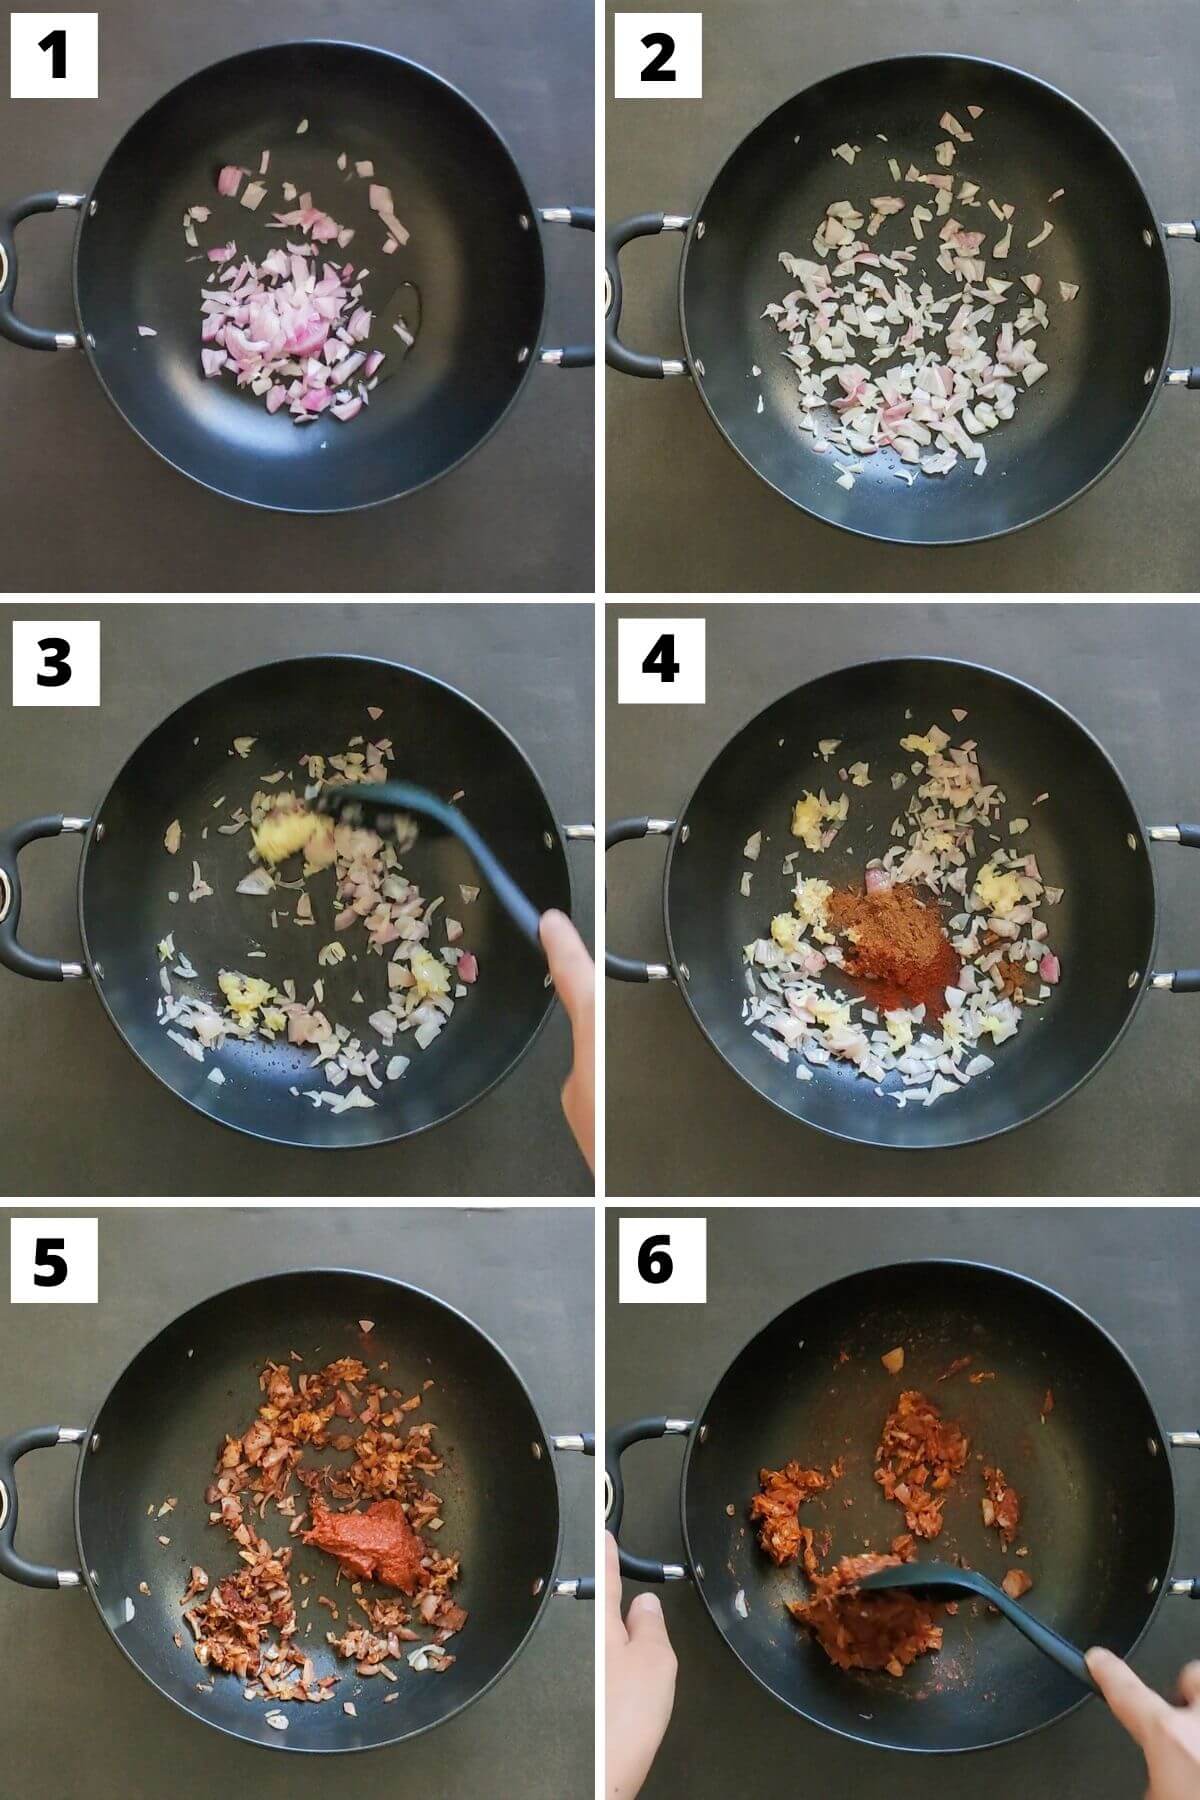 steps 1 to 6 of kidney bean enchilada recipe.